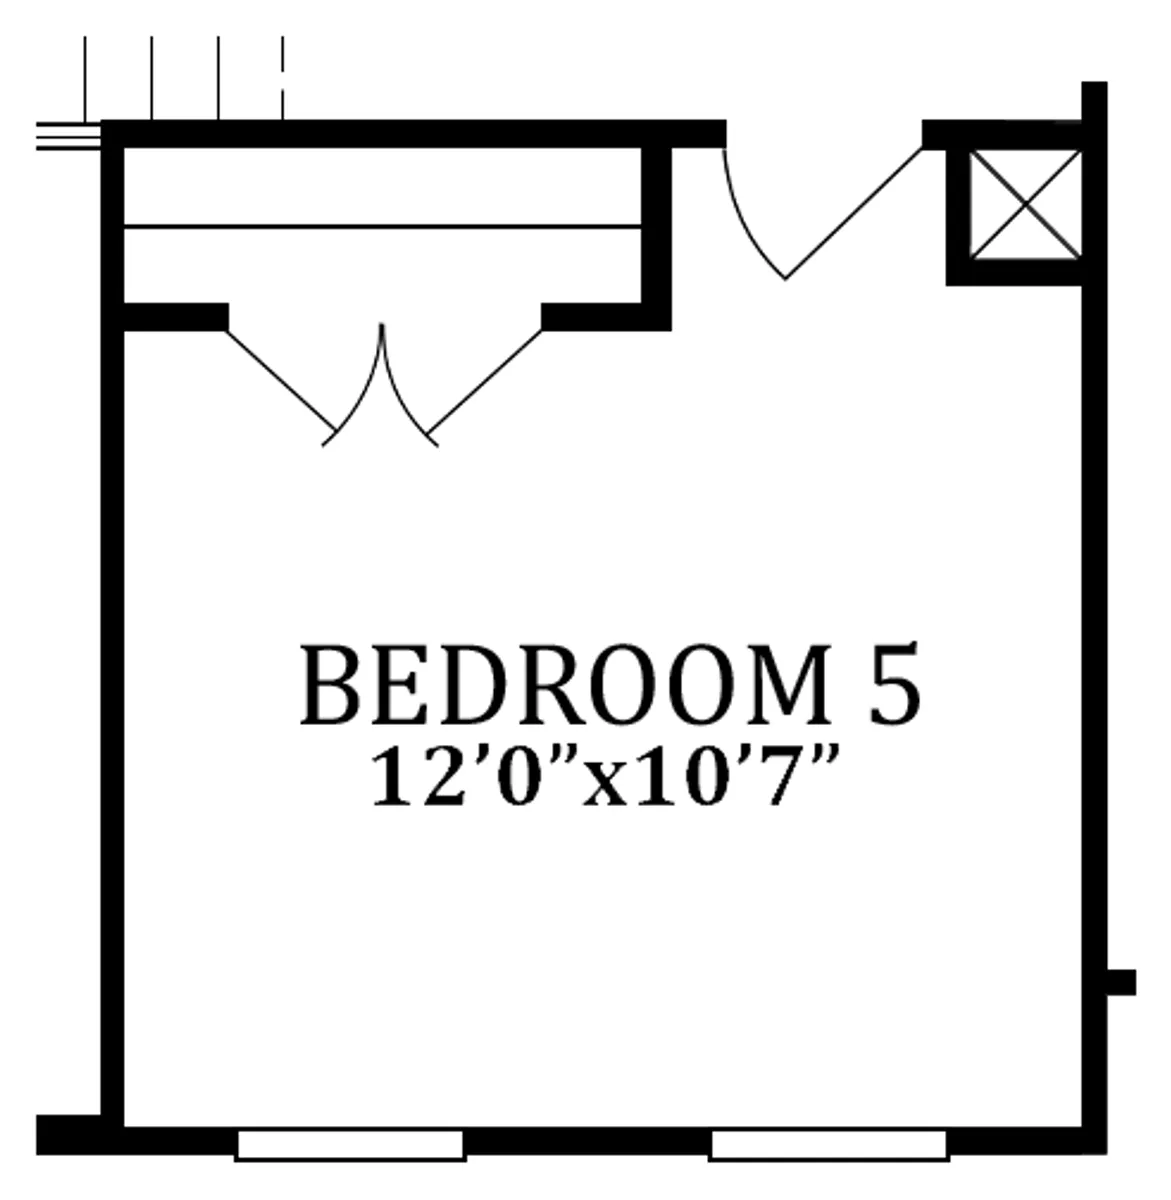 Second Floor | Optional Bedroom 5 - In Lieu of Loft